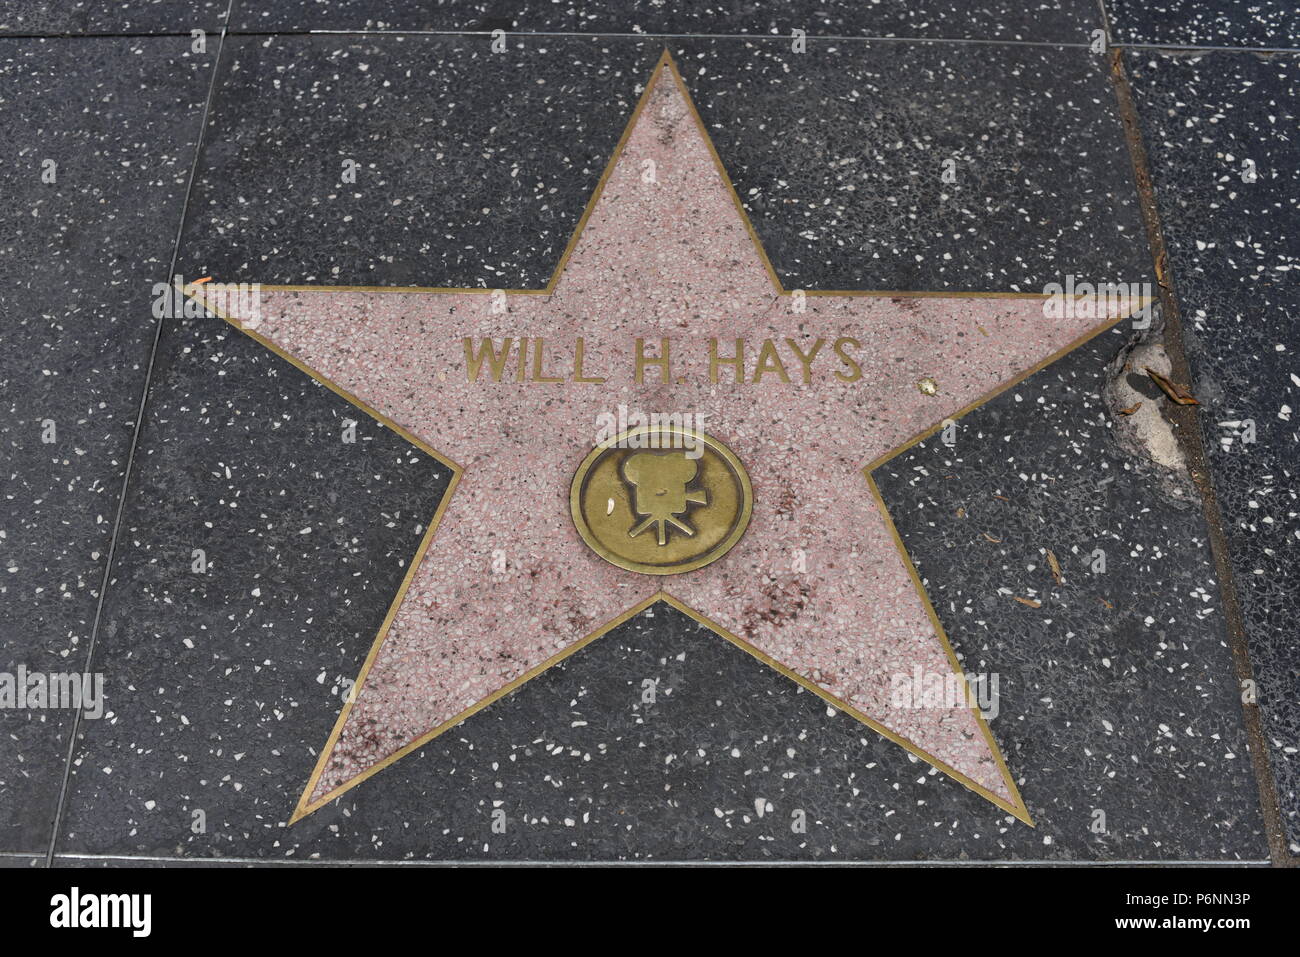 HOLLYWOOD, CA - le 29 juin : H. Hays étoile sur le Hollywood Walk of Fame à Hollywood, Californie le 29 juin 2018. Banque D'Images